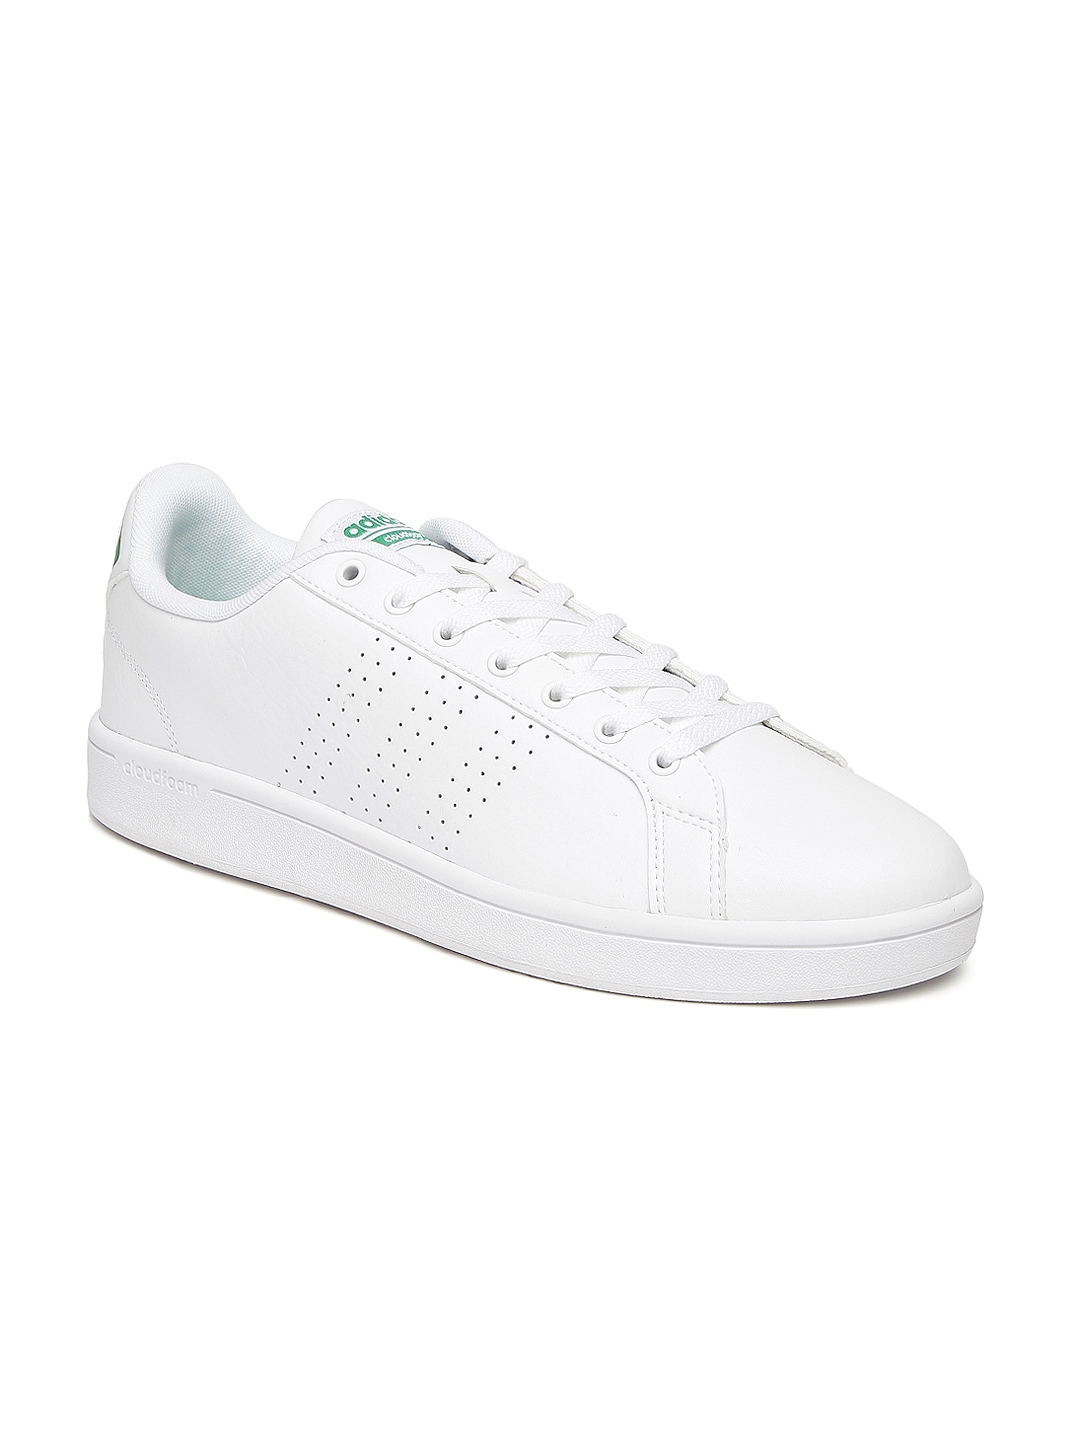 adidas neo white sneakers